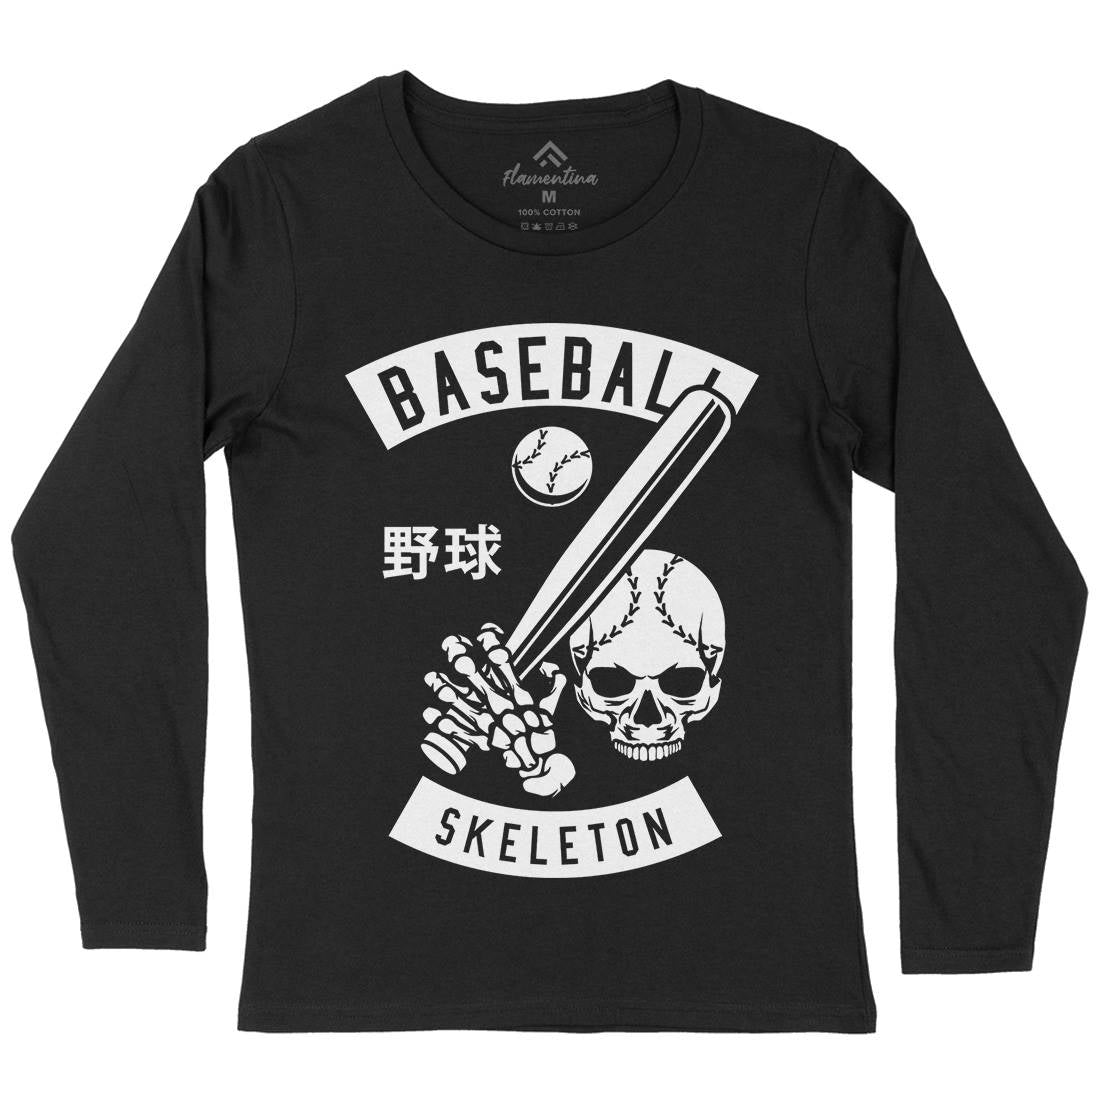 Baseball Skeleton Womens Long Sleeve T-Shirt Sport B489